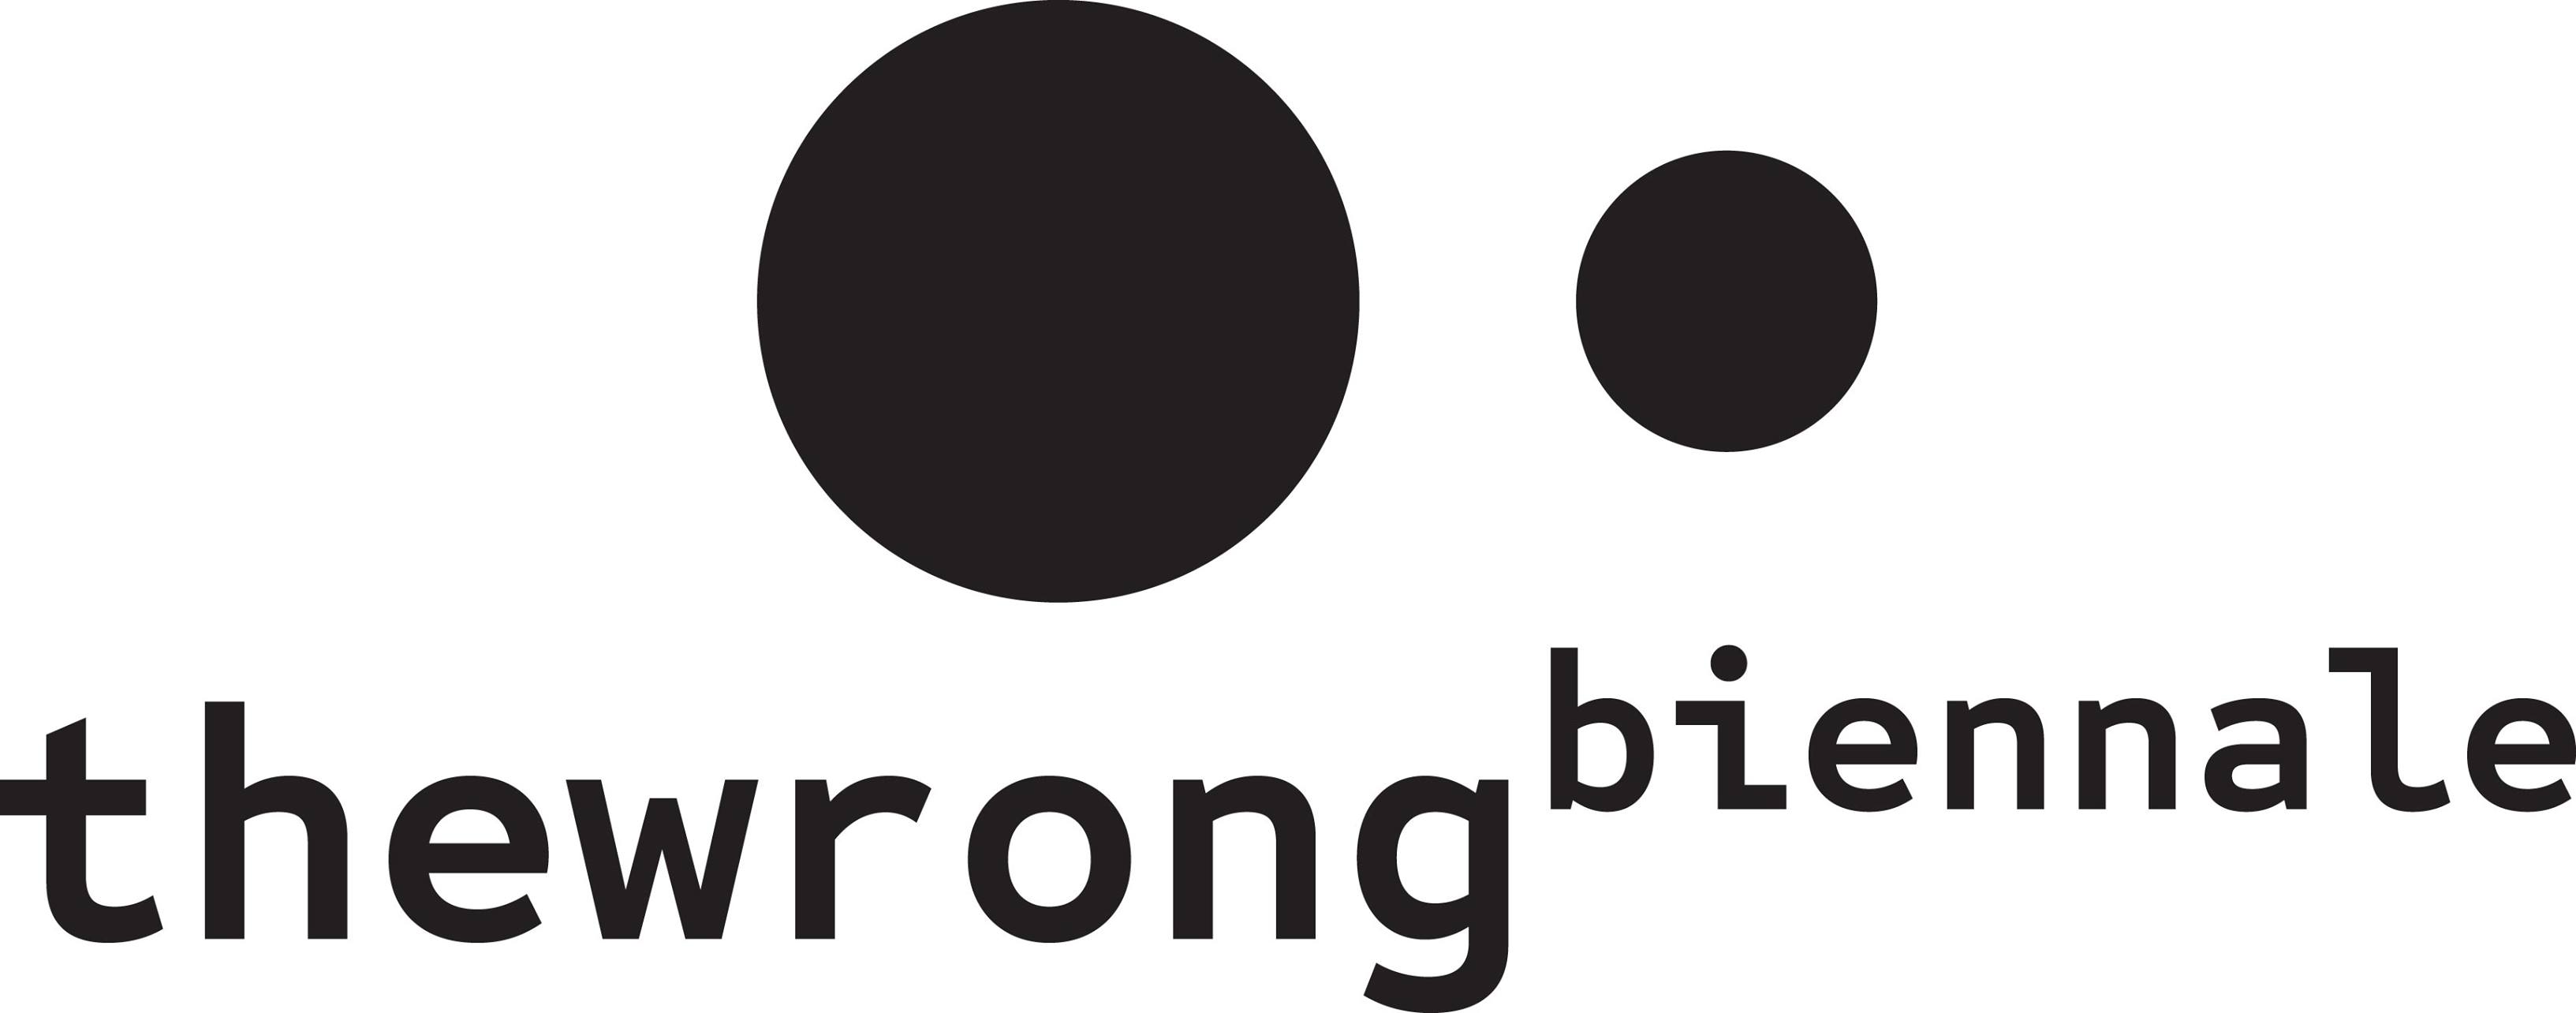 Logo of the wrong biennial